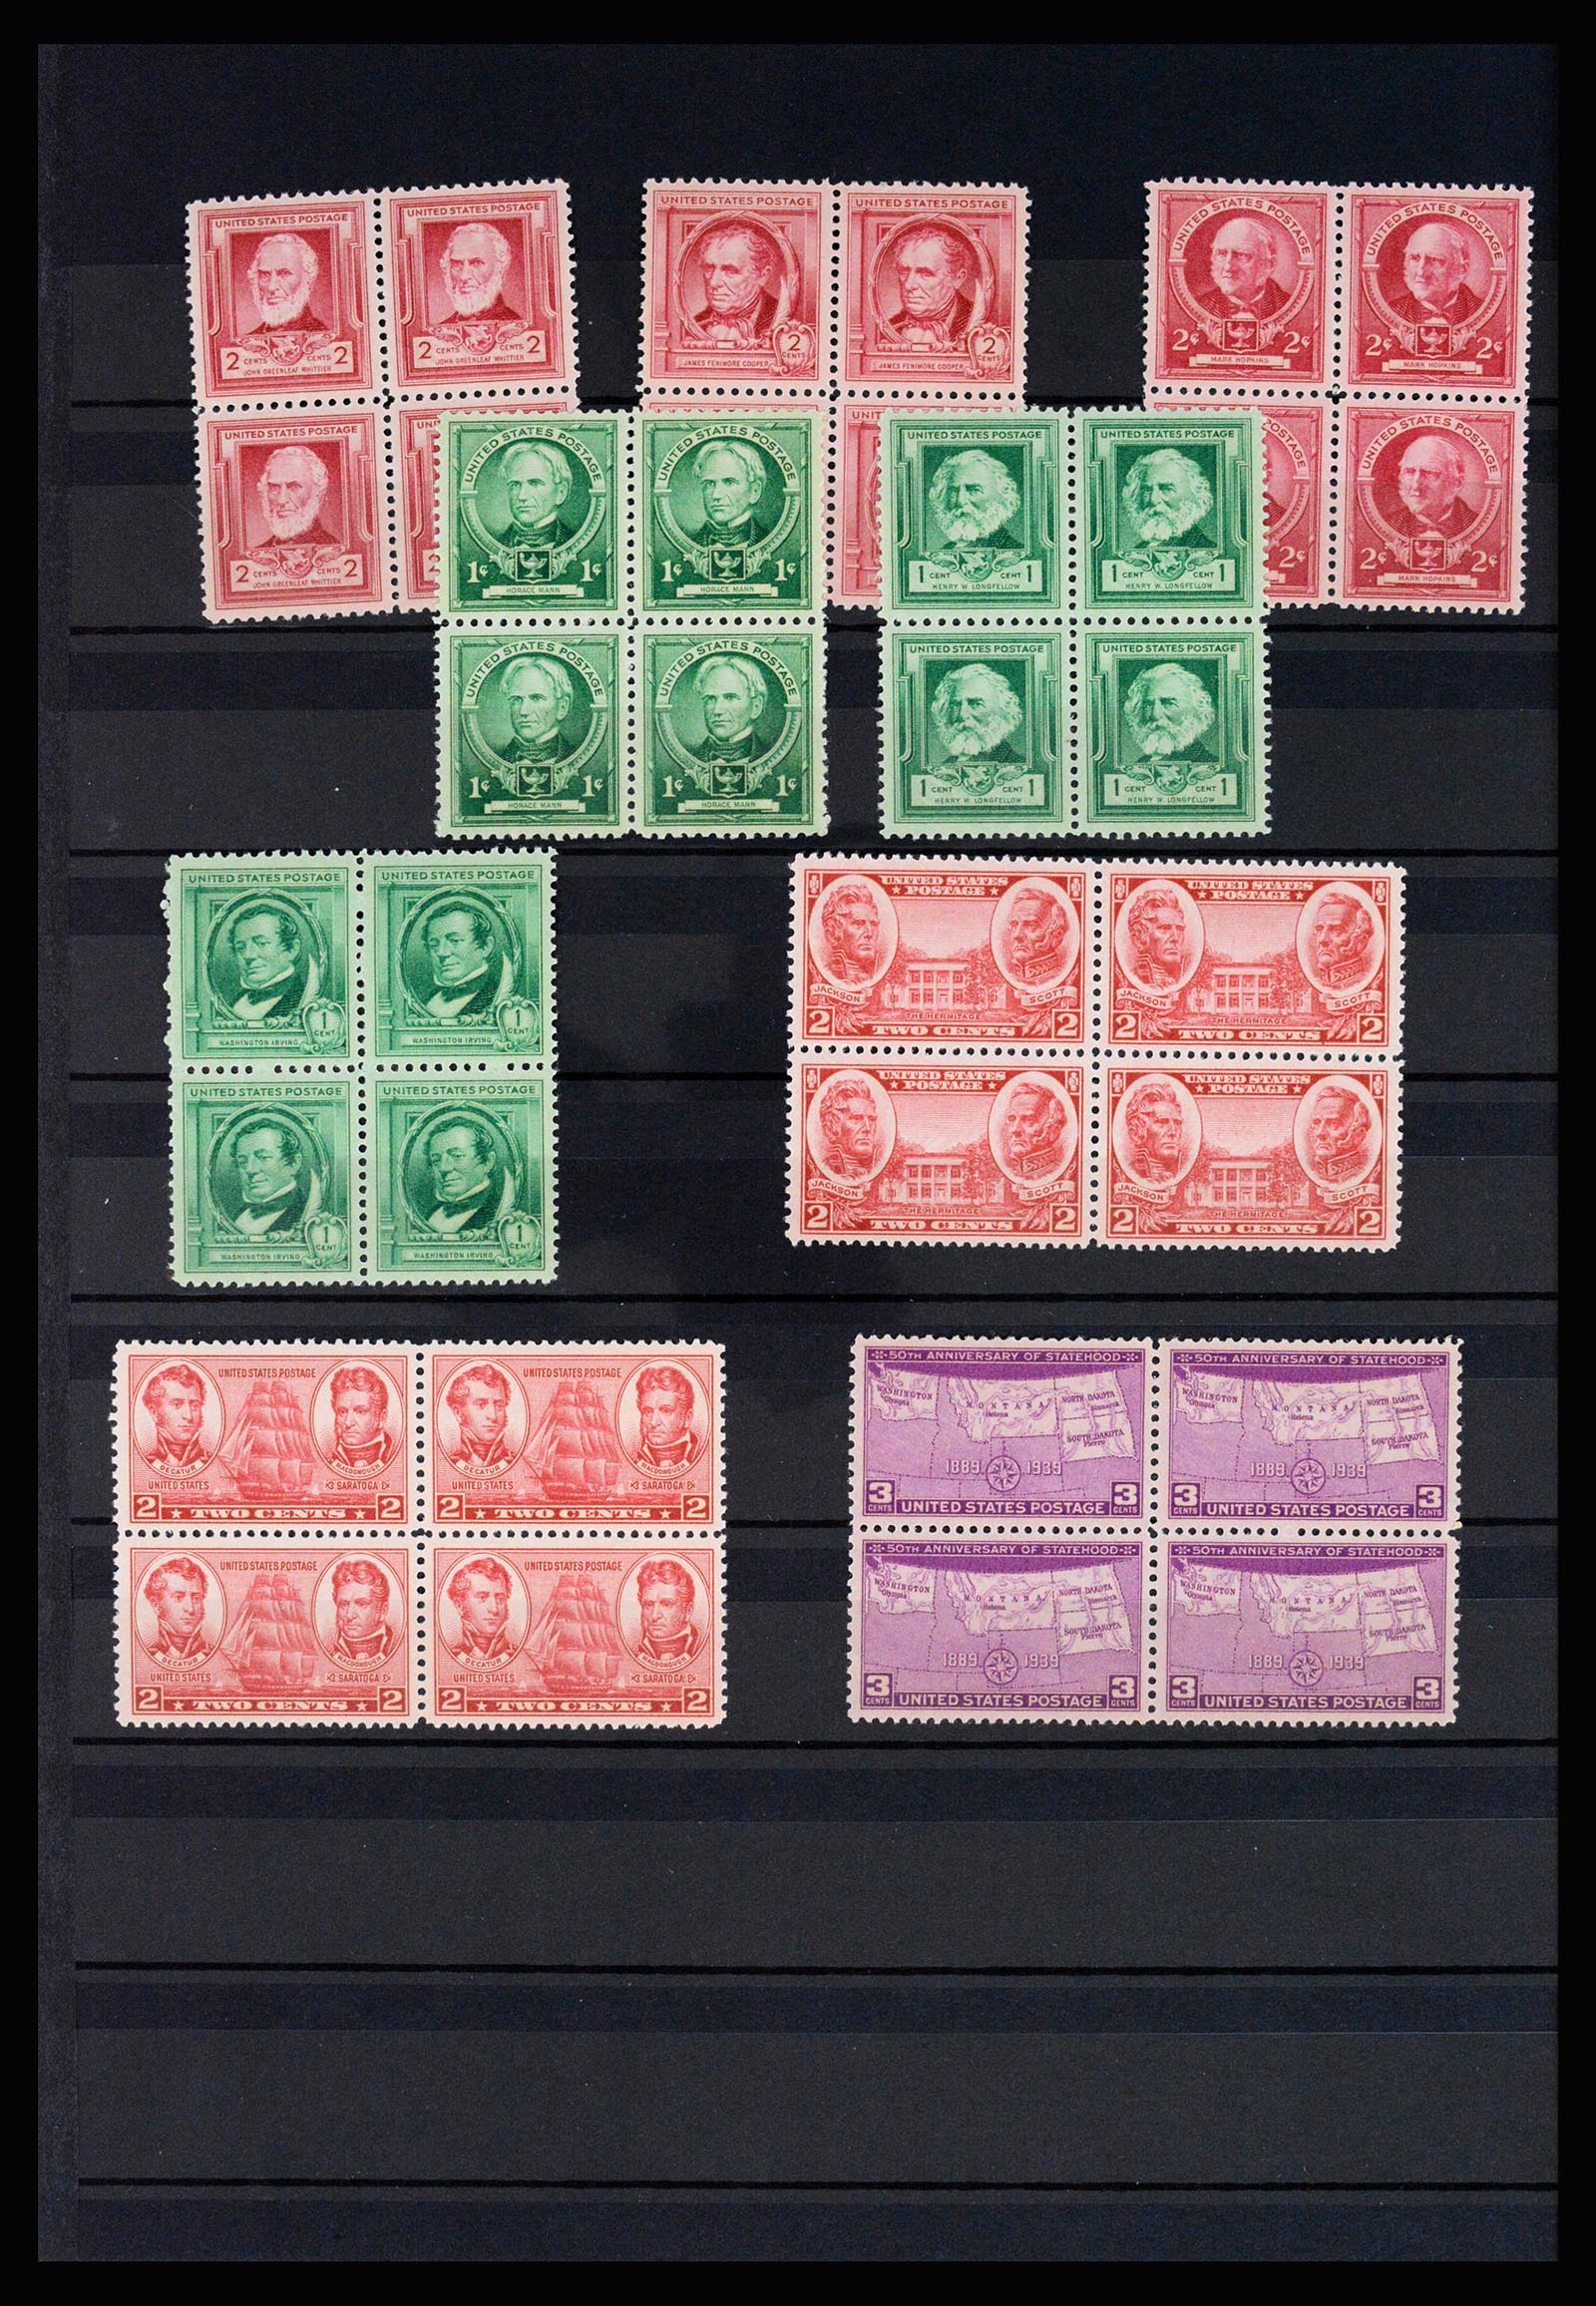 37136 020 - Stamp collection 37136 USA 1847-1960.